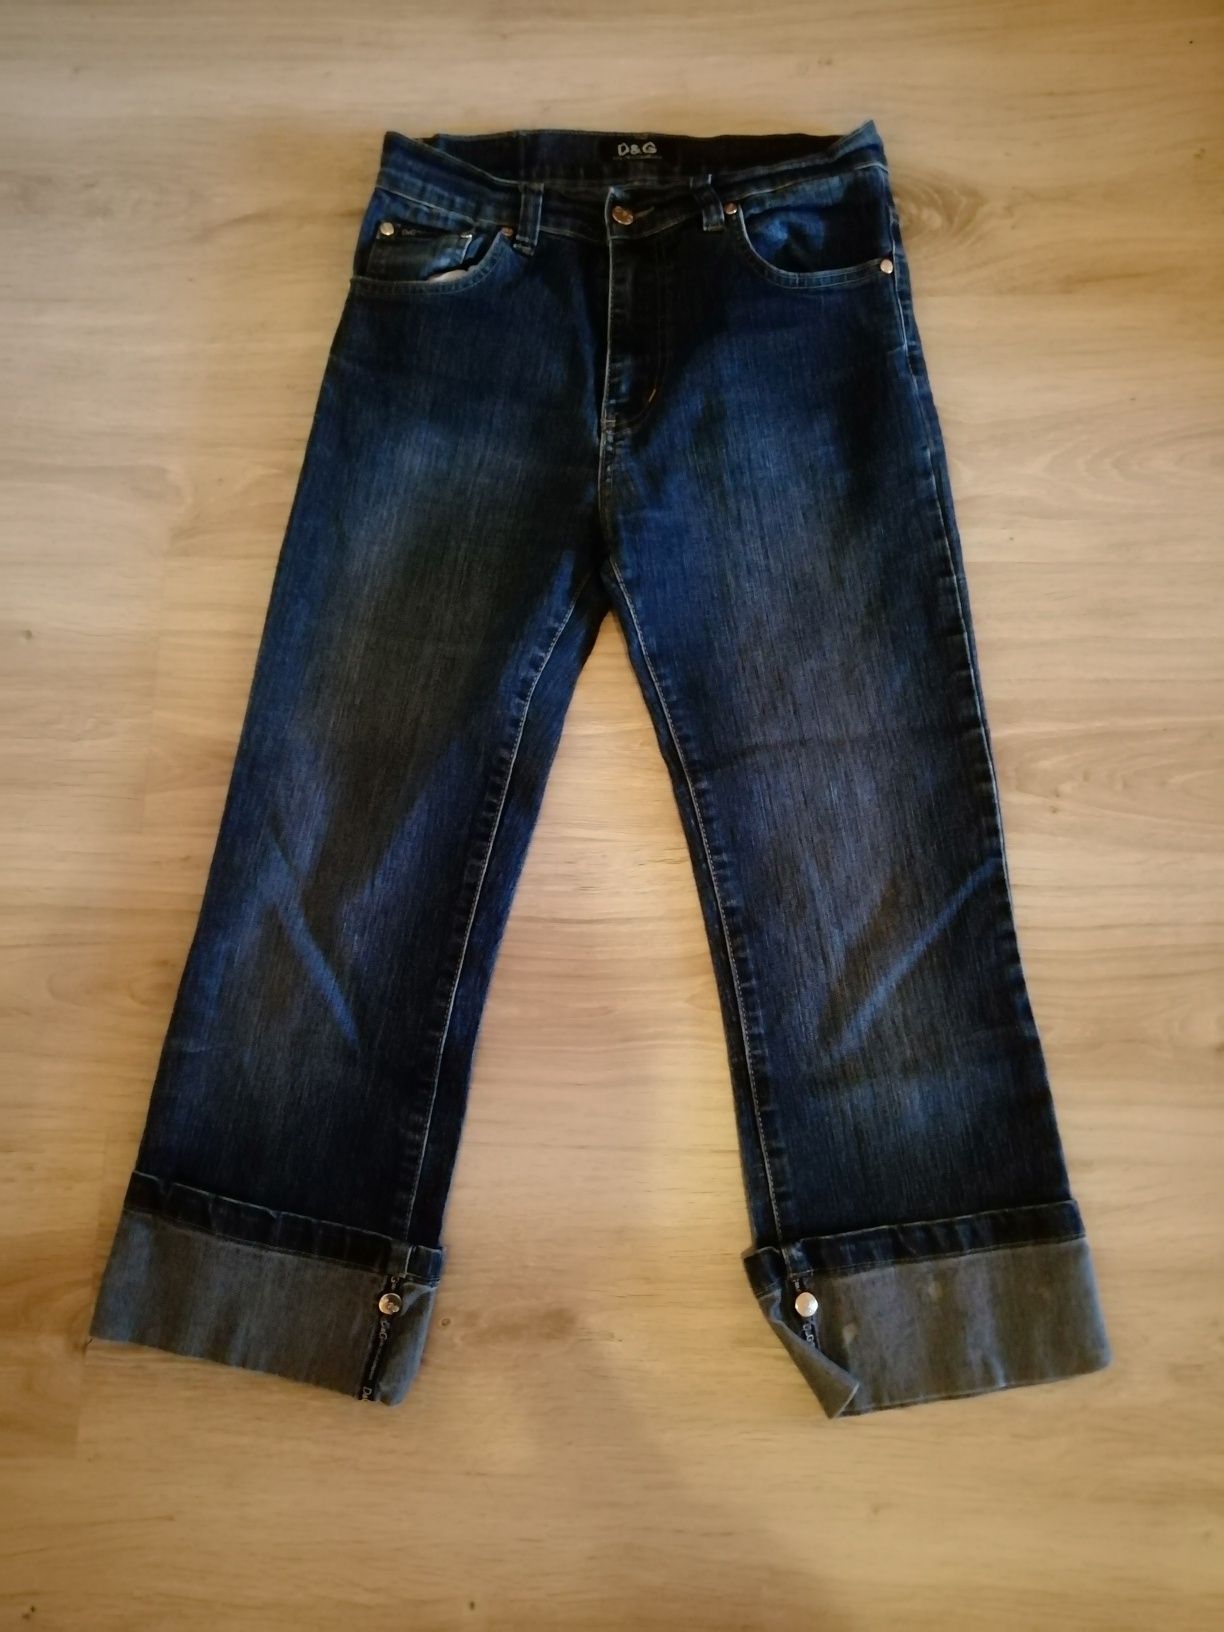 Spodnie DOLCE & GABBANA jeans D&G rybaczki damskie r. 30 S